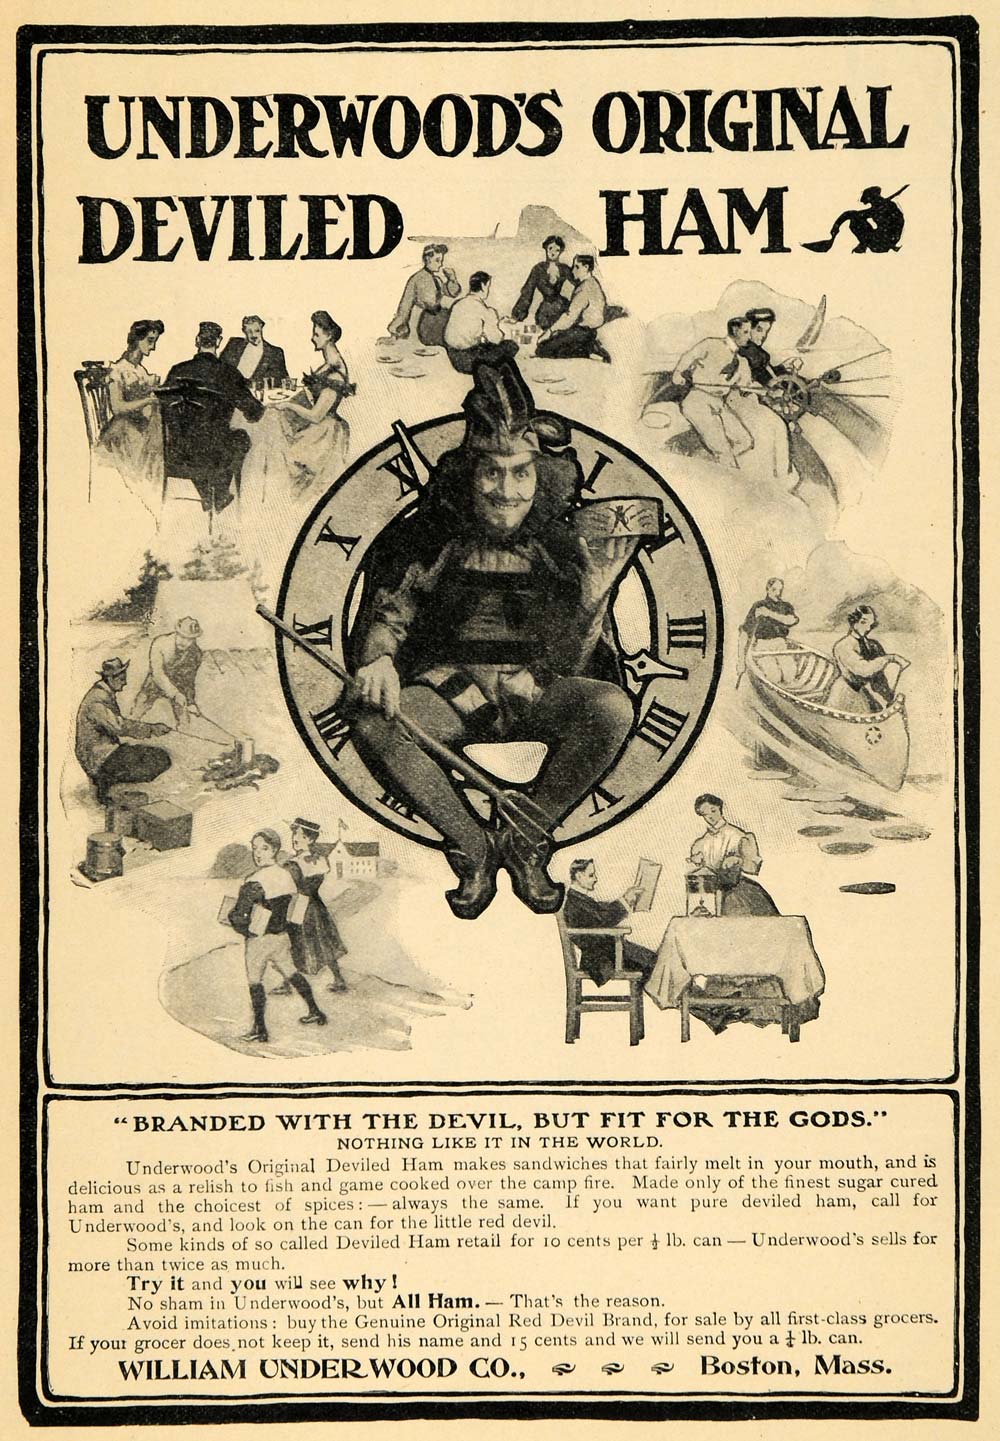 1906 Ad William Underwood's Canned Original Deviled Ham - ORIGINAL GH3